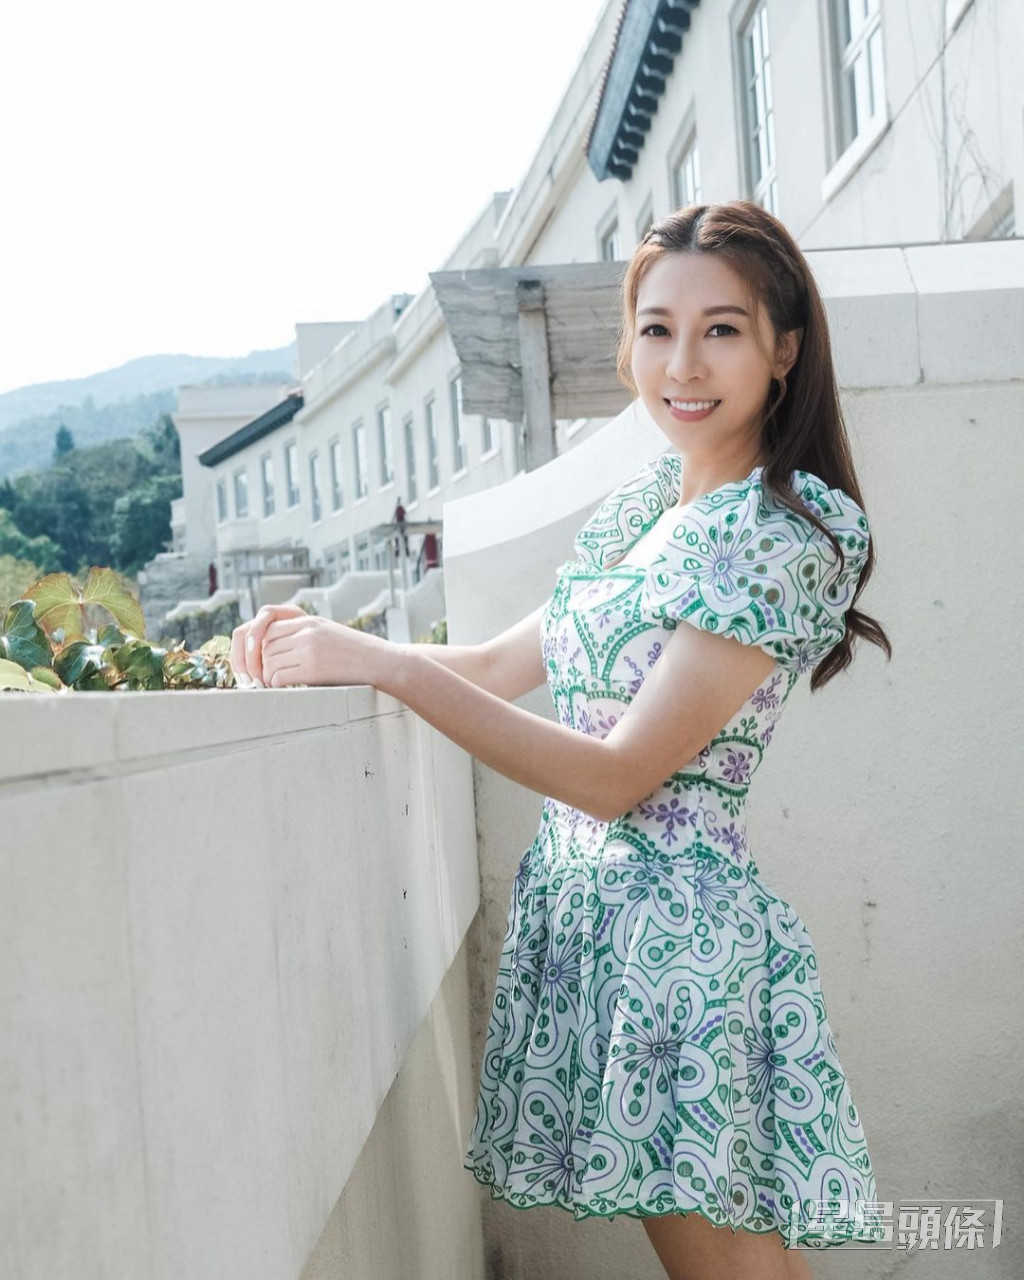 黃婉曼是TVB前「天氣女郎」。